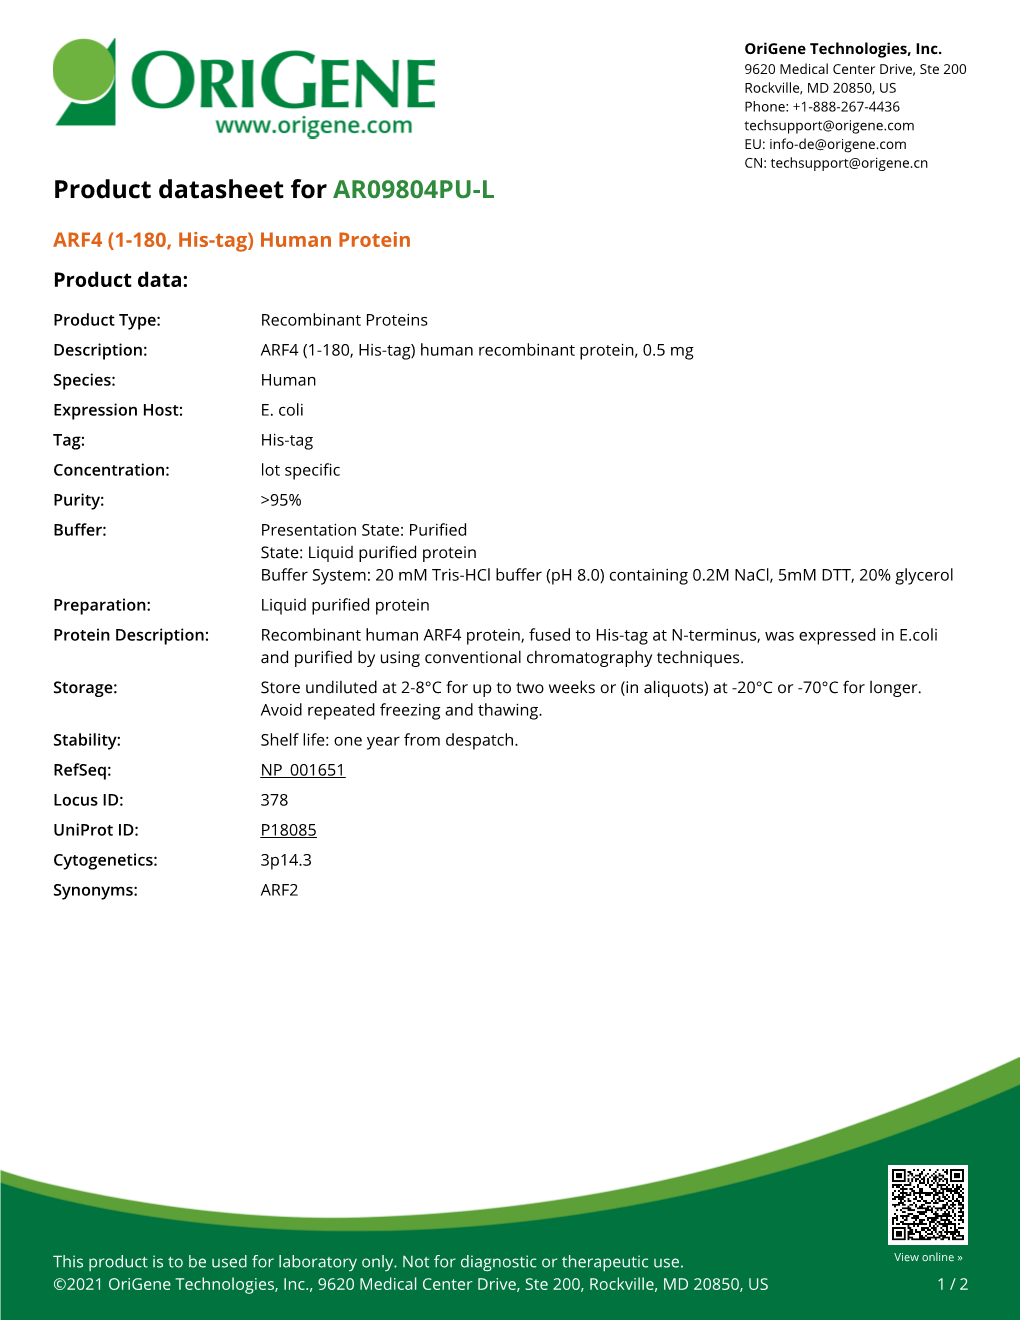 ARF4 (1-180, His-Tag) Human Protein – AR09804PU-L | Origene